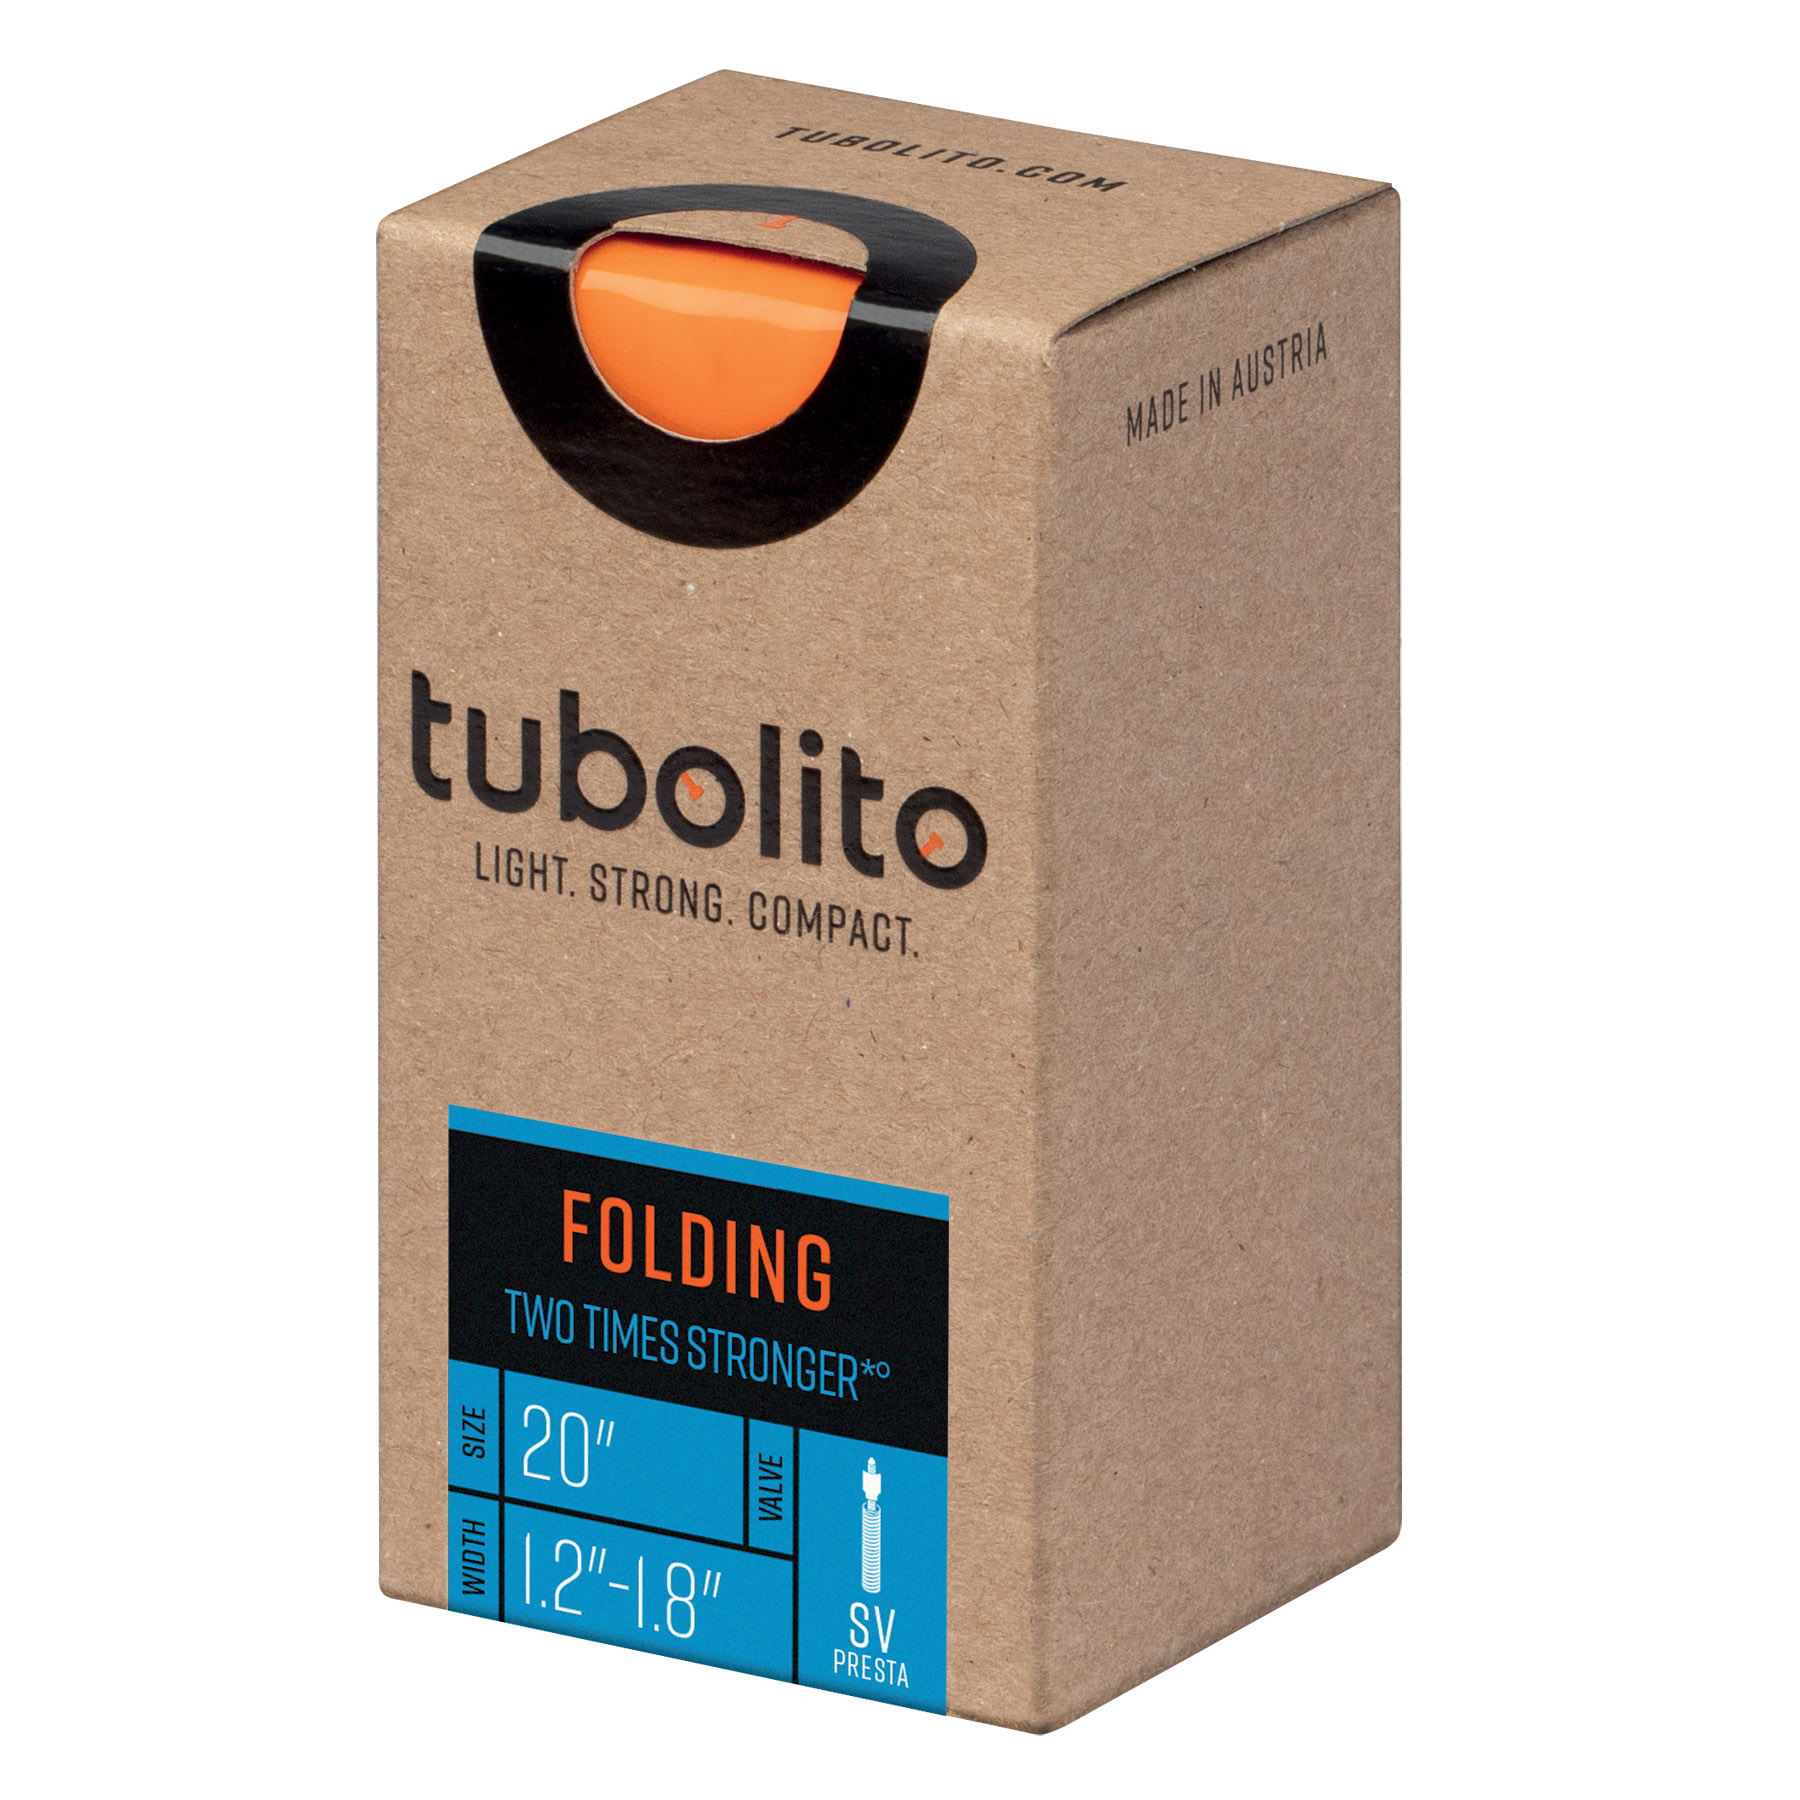 Immagine di Tubolito Tubo Foldingbike Camera d'Aria - 20"x1.2-1.8" - Presta - 42mm